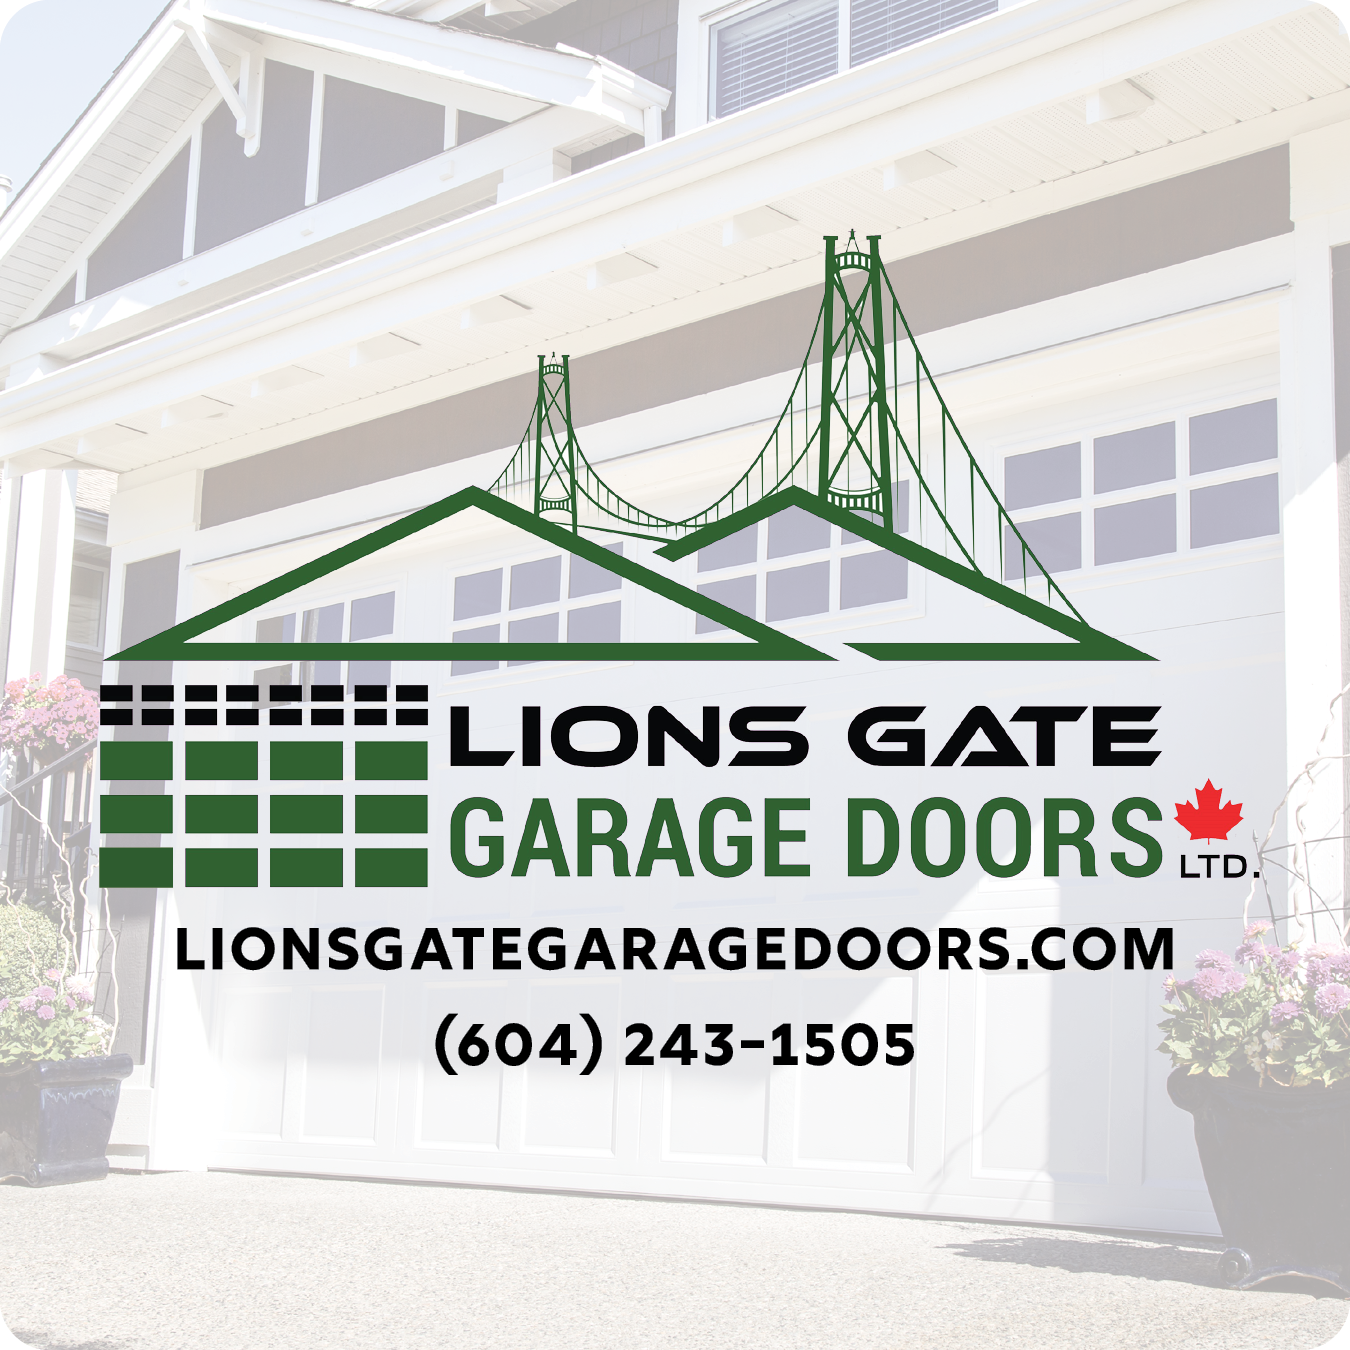 Lions Gate Garage Doors